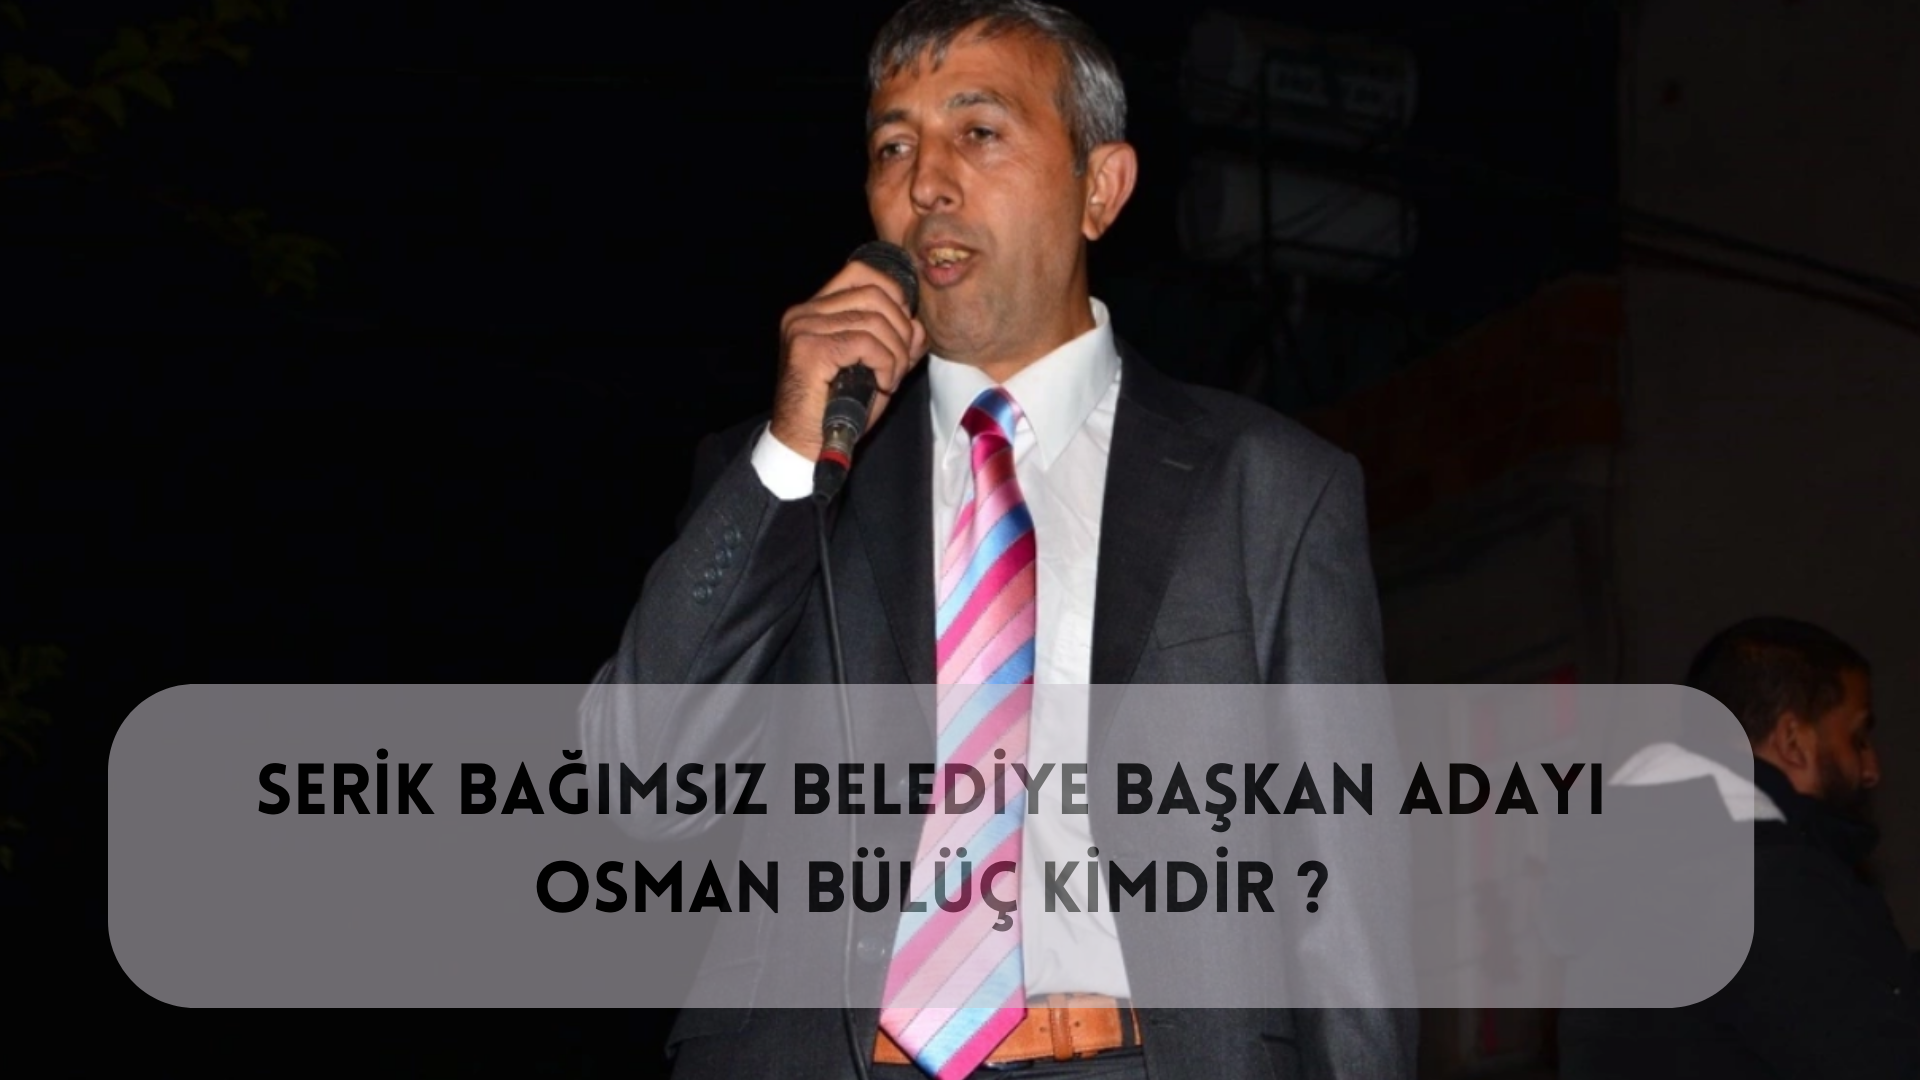 Bağımsız Adaya Destek Büyük! Serik Bağımsız Belediye Başkan Adayı Osman Bülüç Kimdir ?